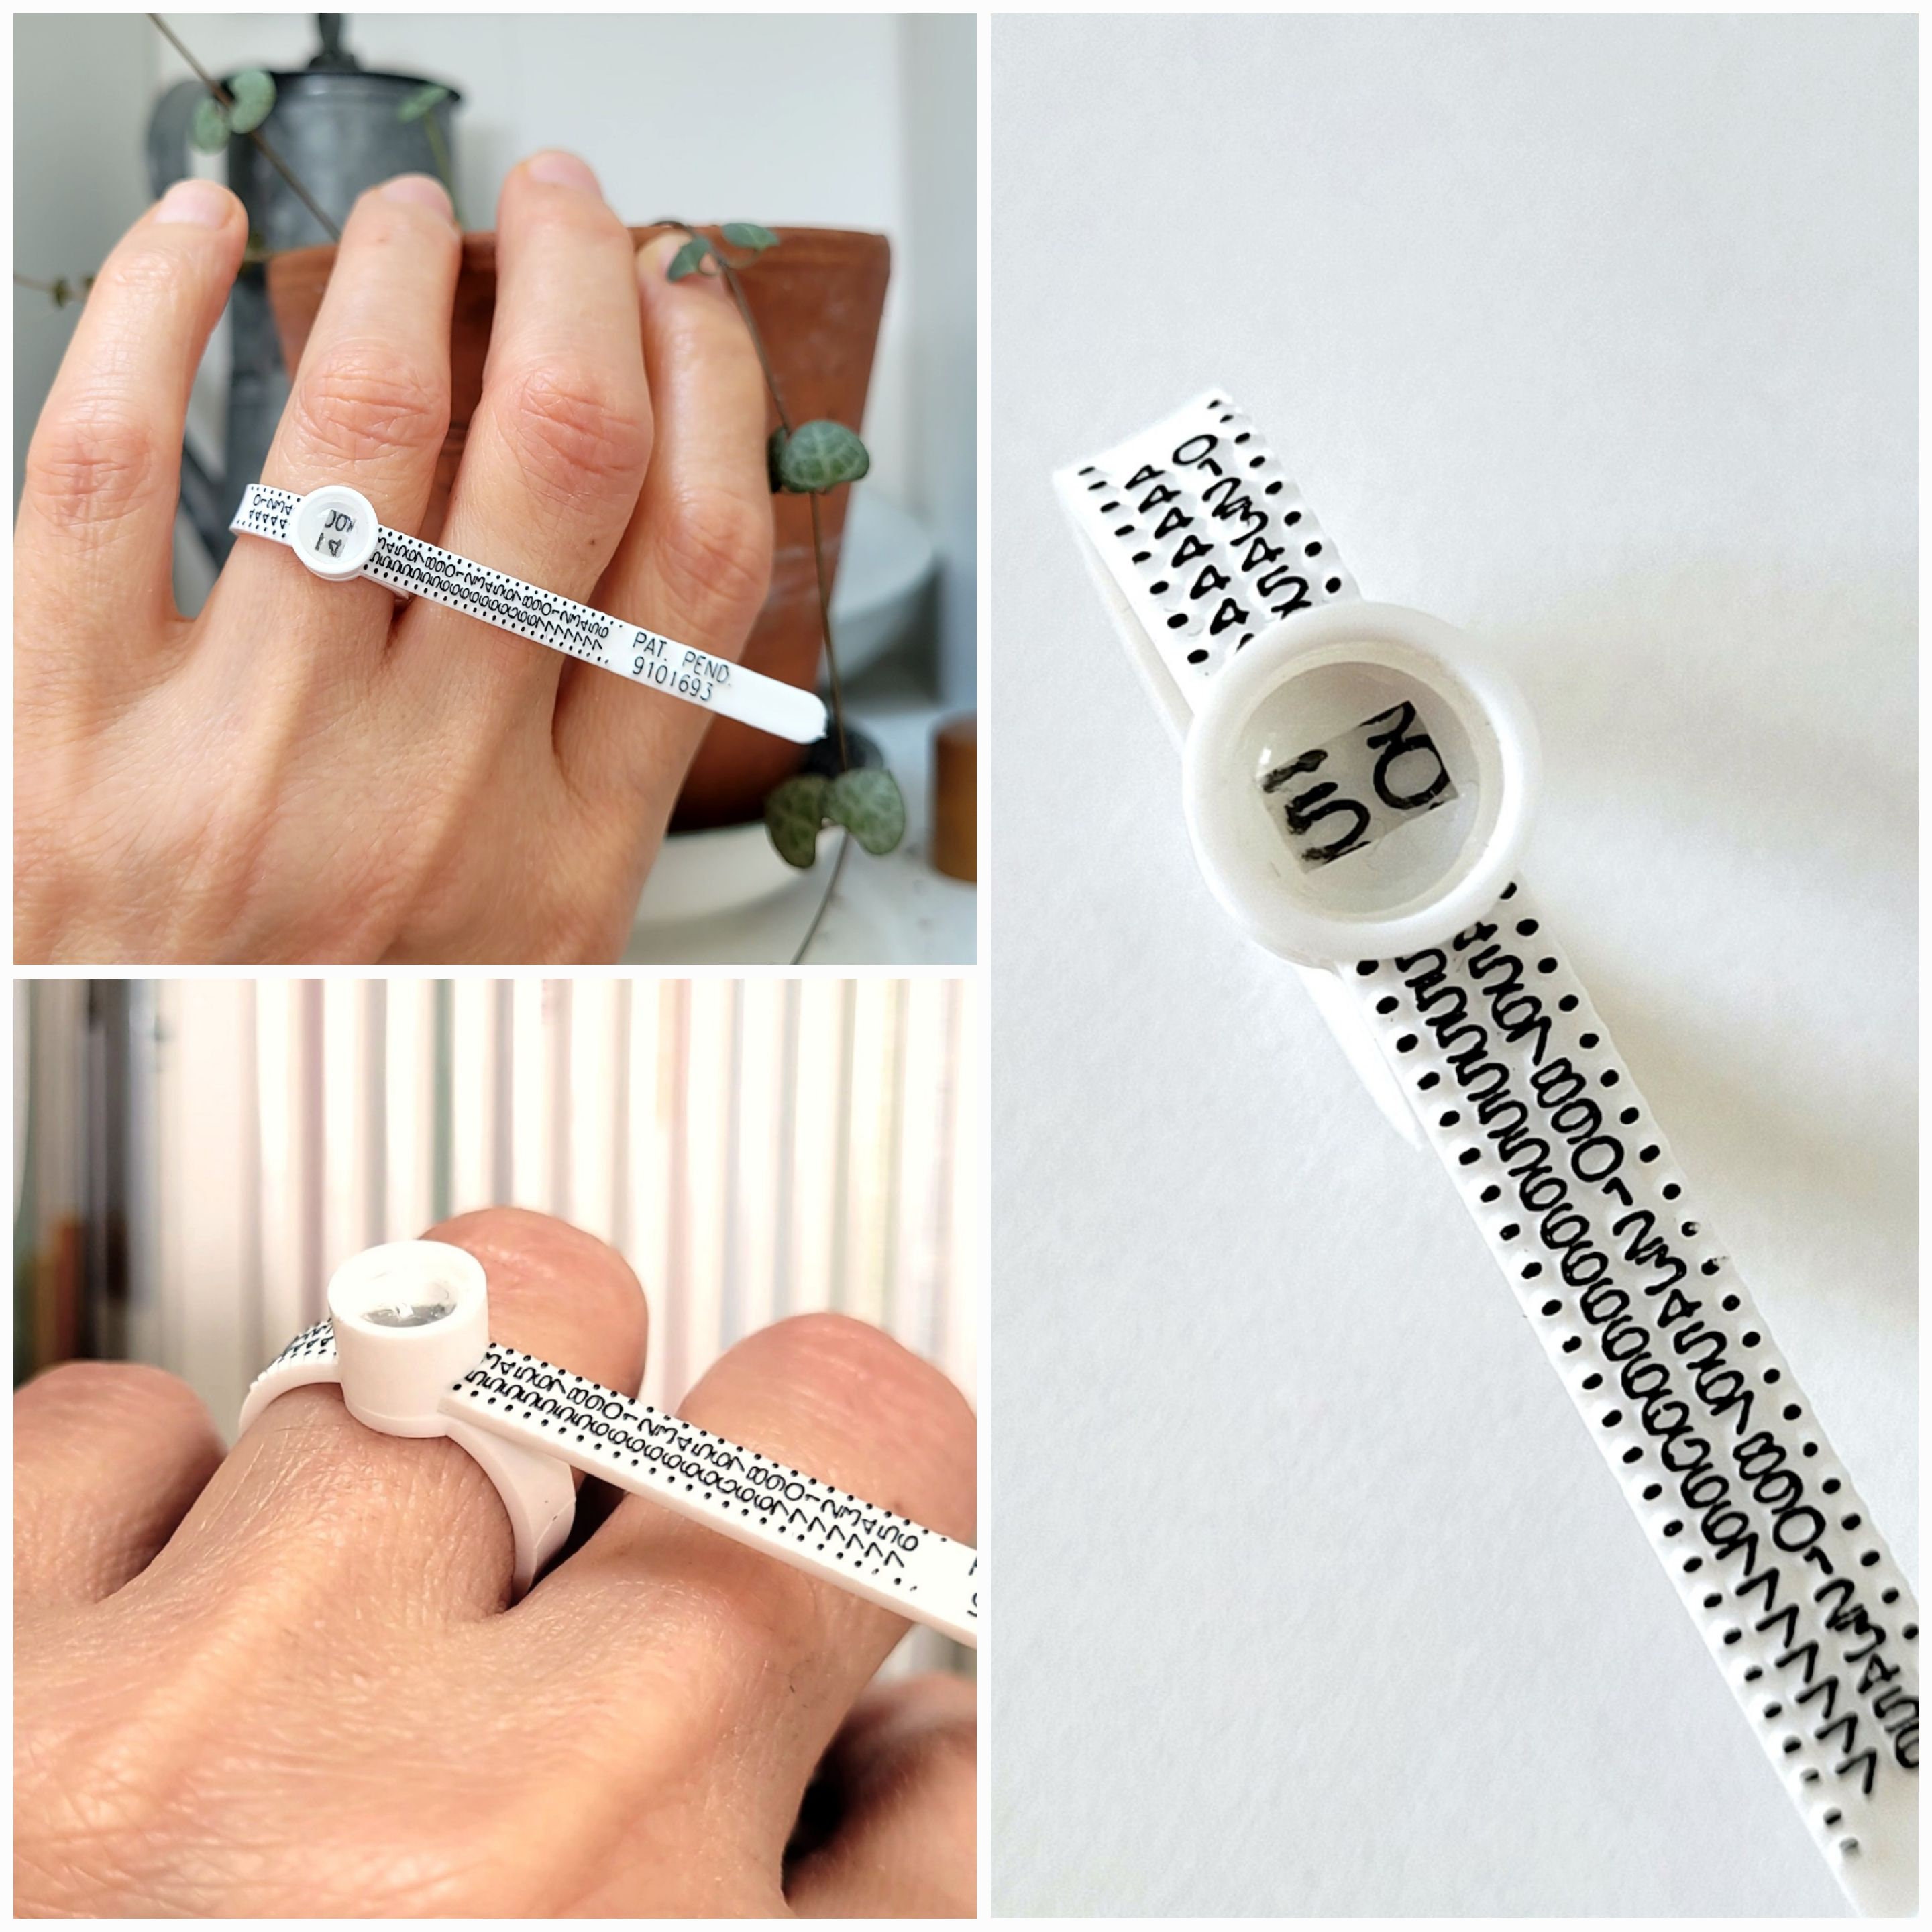 Medidor de anillos, Medidor de anillos estándar, Herramienta de tamaño de  anillos reutilizable, Medidor de plástico para medir anillos. Sistema  europeo de medición de los dedos guía de tamaño francés 